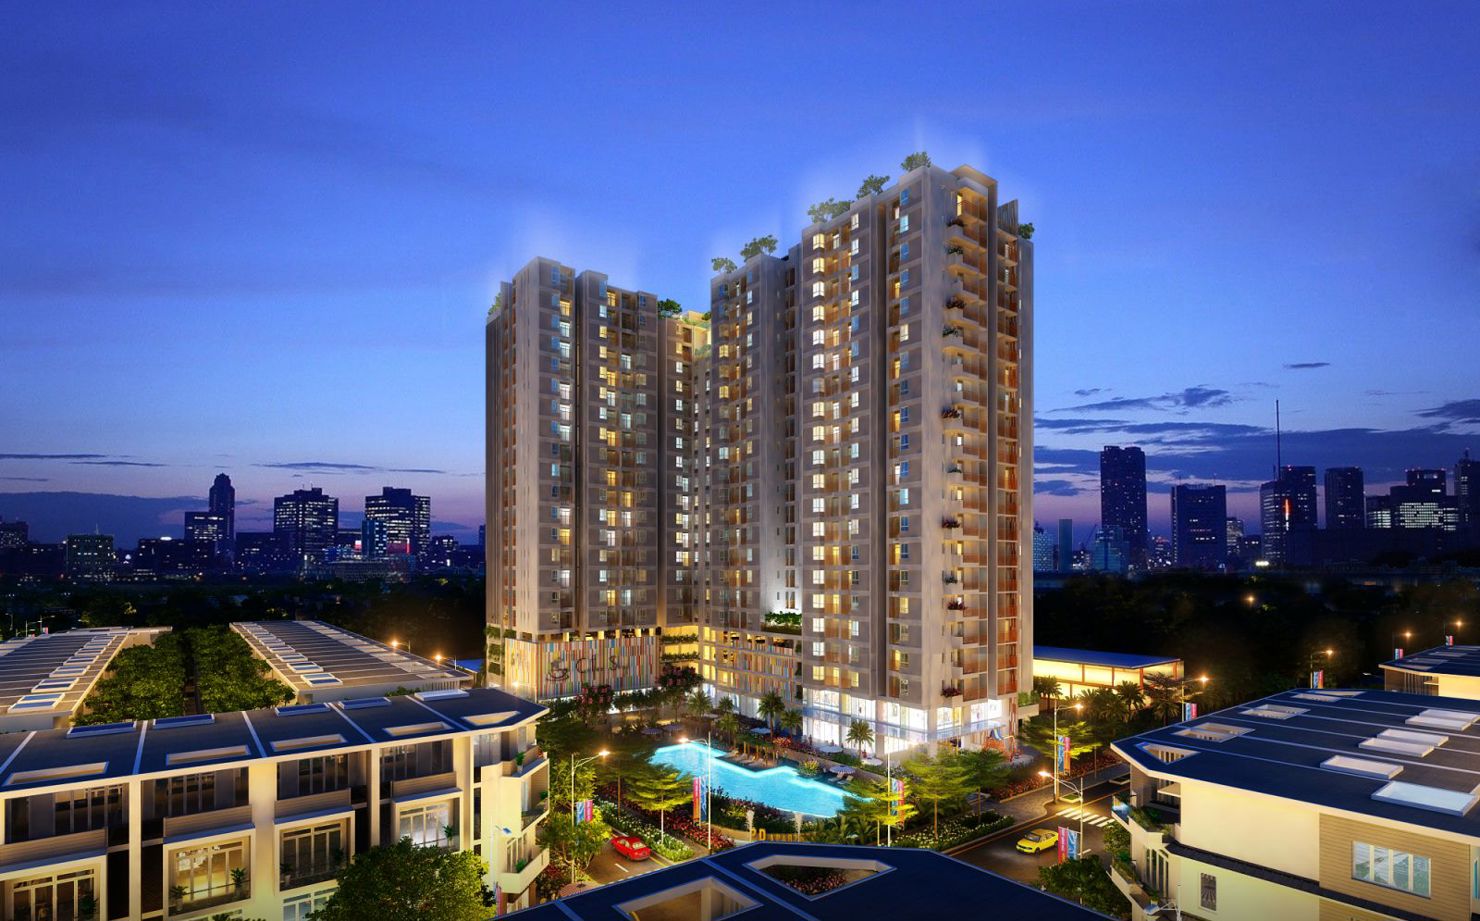 400 căn hộ tại Dự án Him Lam Phú Đông sẽ được bàn giao nhà trong quý I/2018. Nguồn: internet